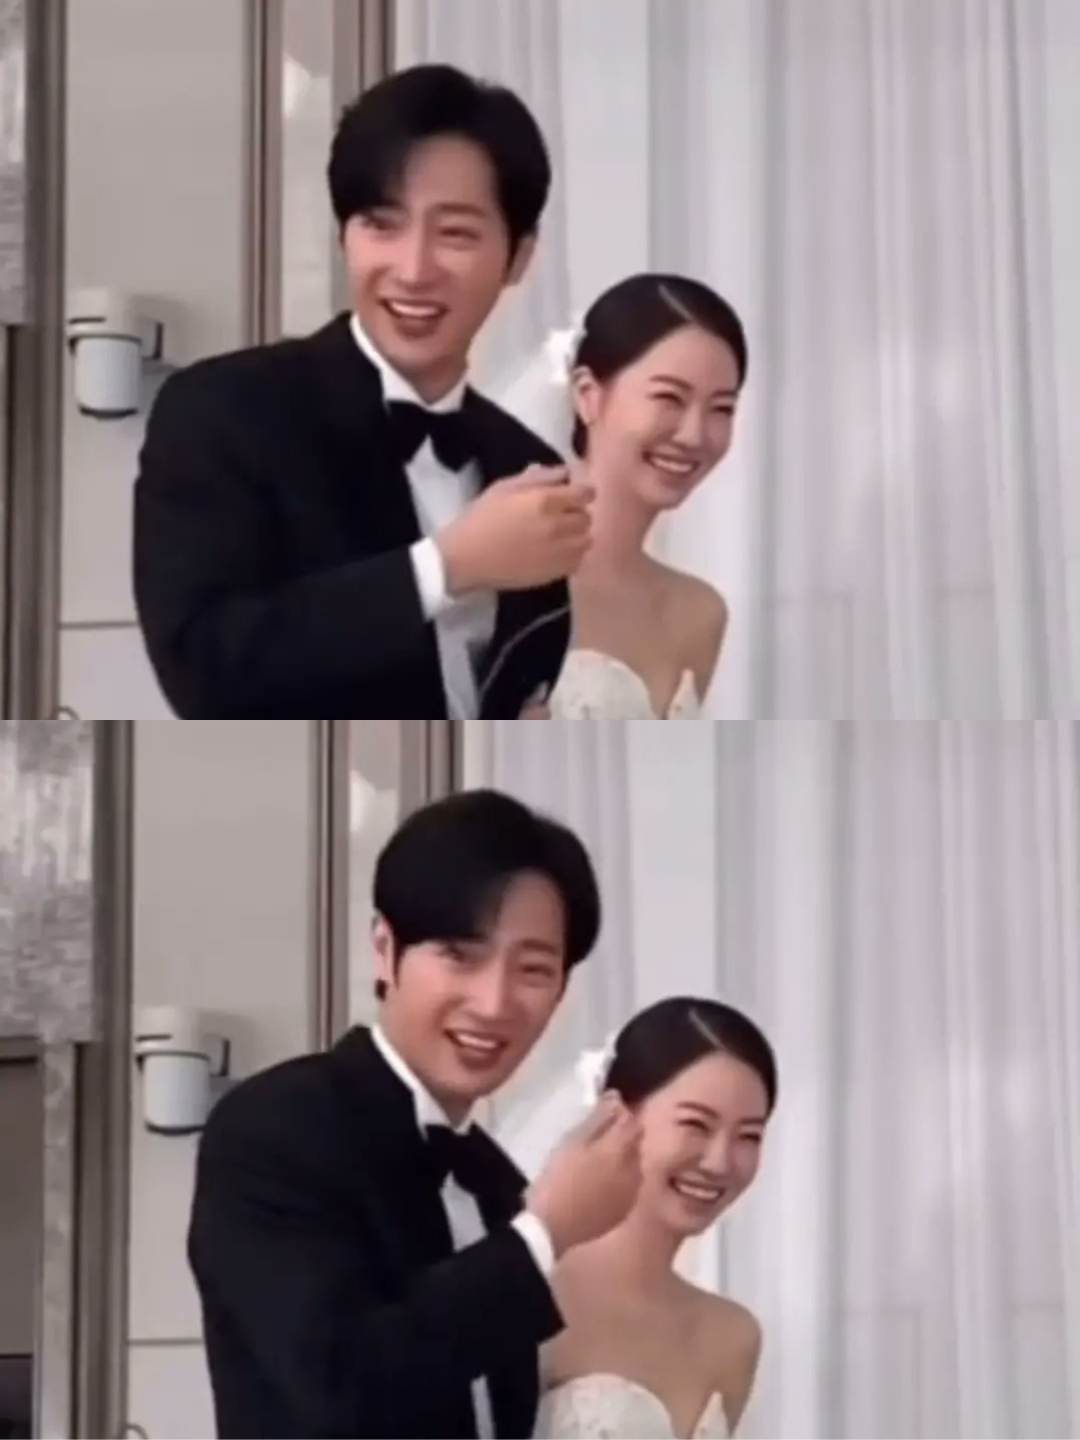 حفل زفاف الممثل الكوري الوسيم لي سانغ يوب وزوجته - كيبوبنا KPOPNA - كيبوبنا